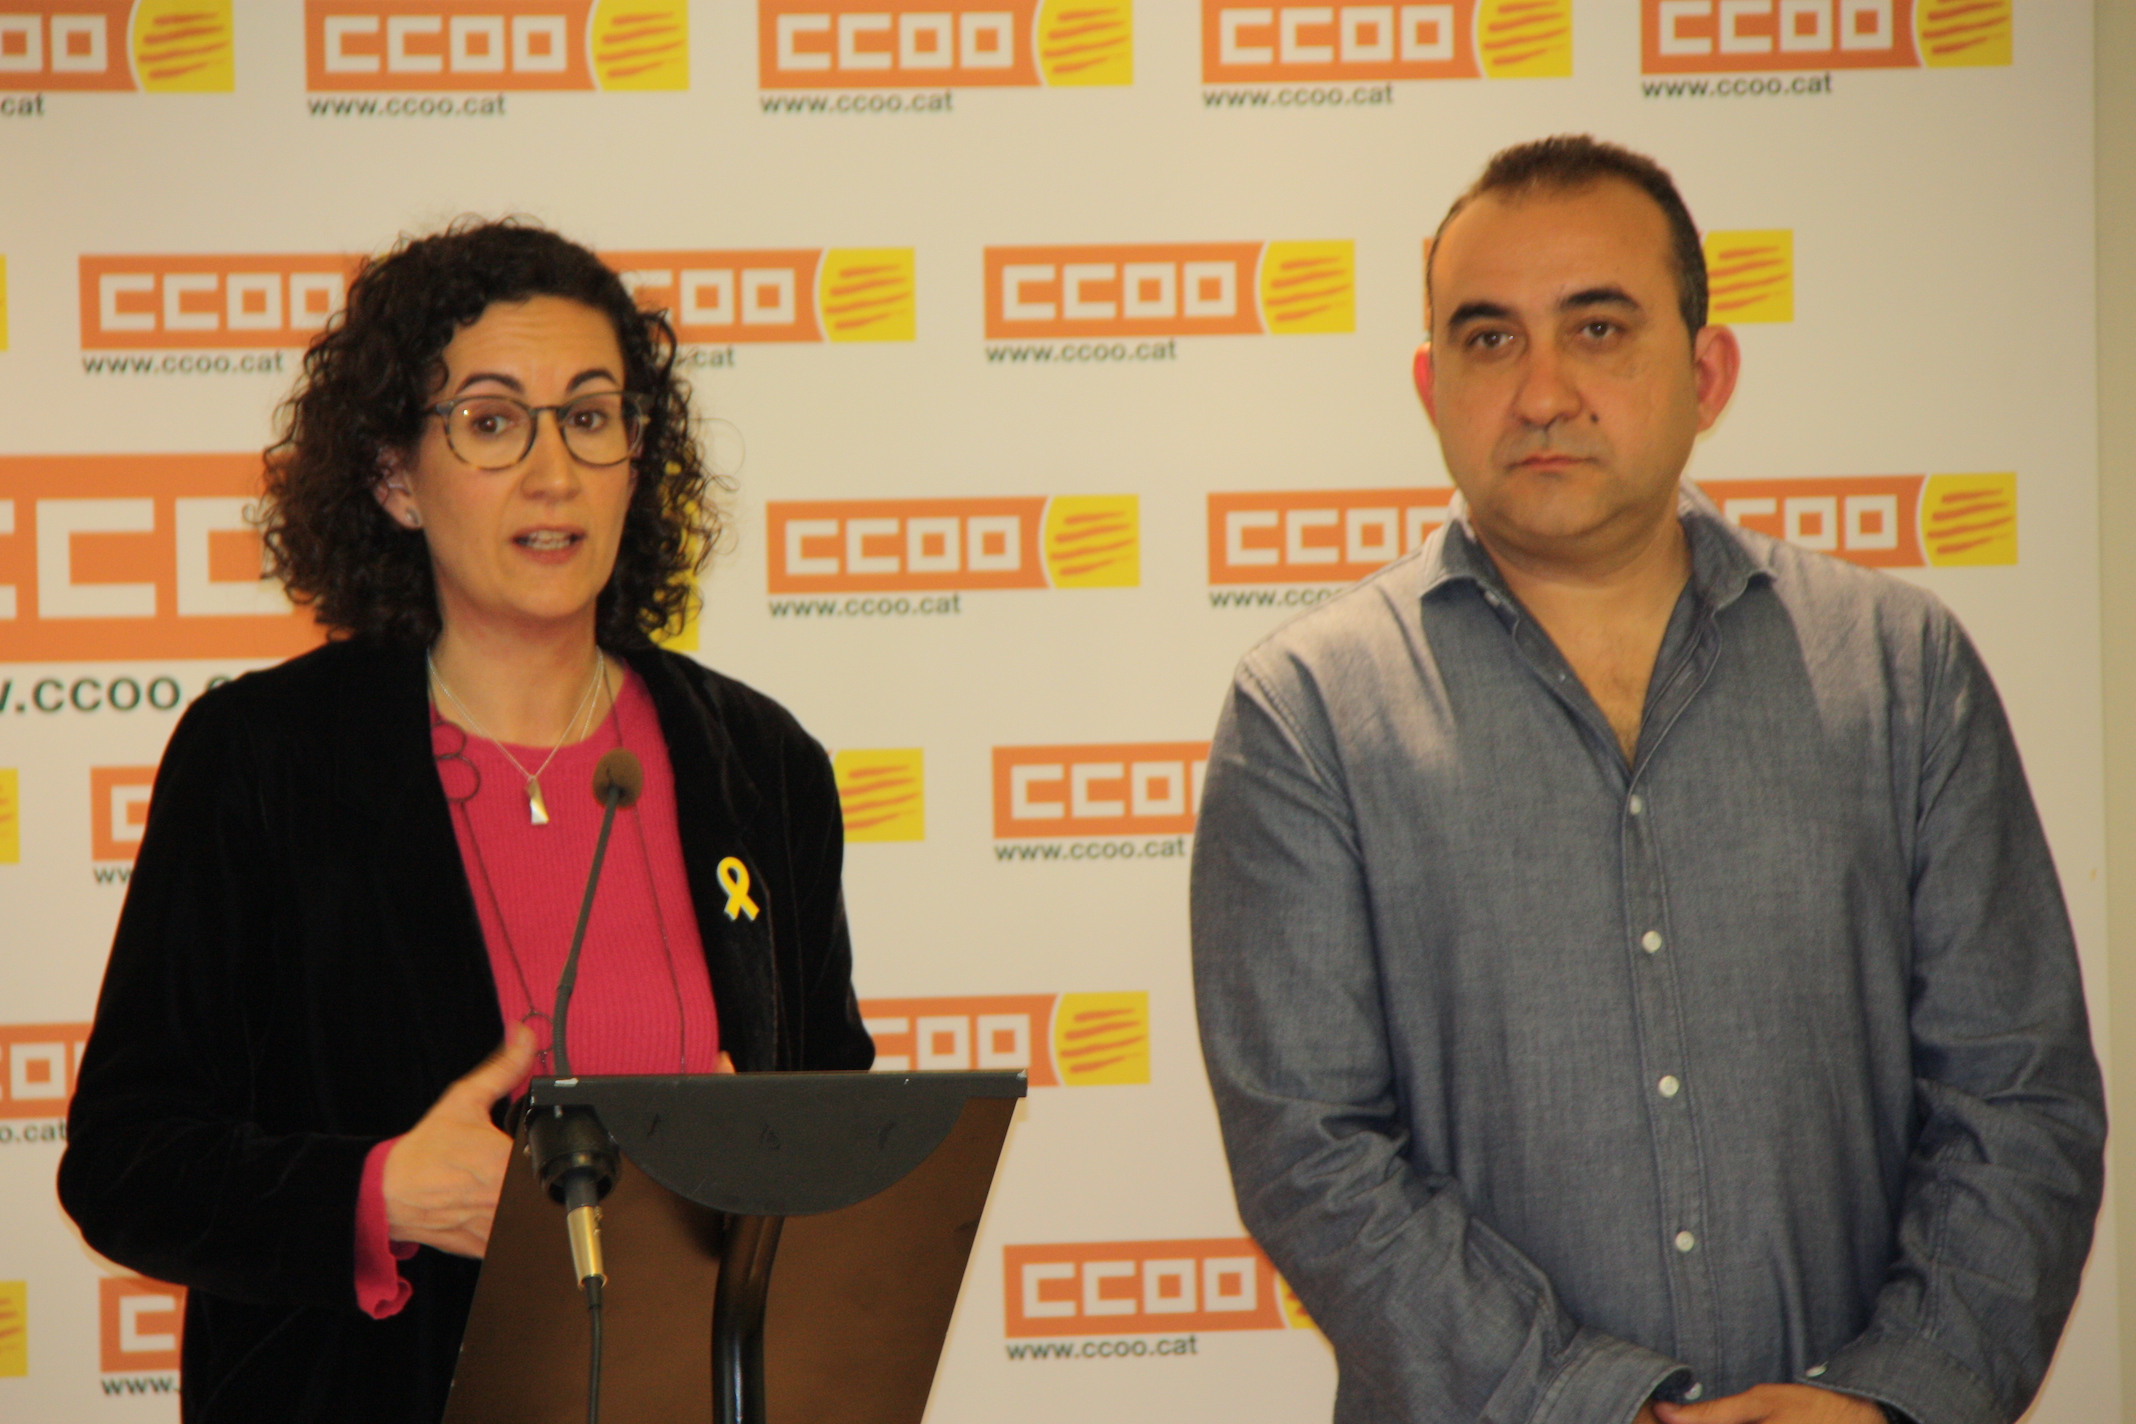 Marta Rovira se ha reunido con Javier Pacheco, secretario general de CCOO, para expresar que ERC prioriza la agenda social.